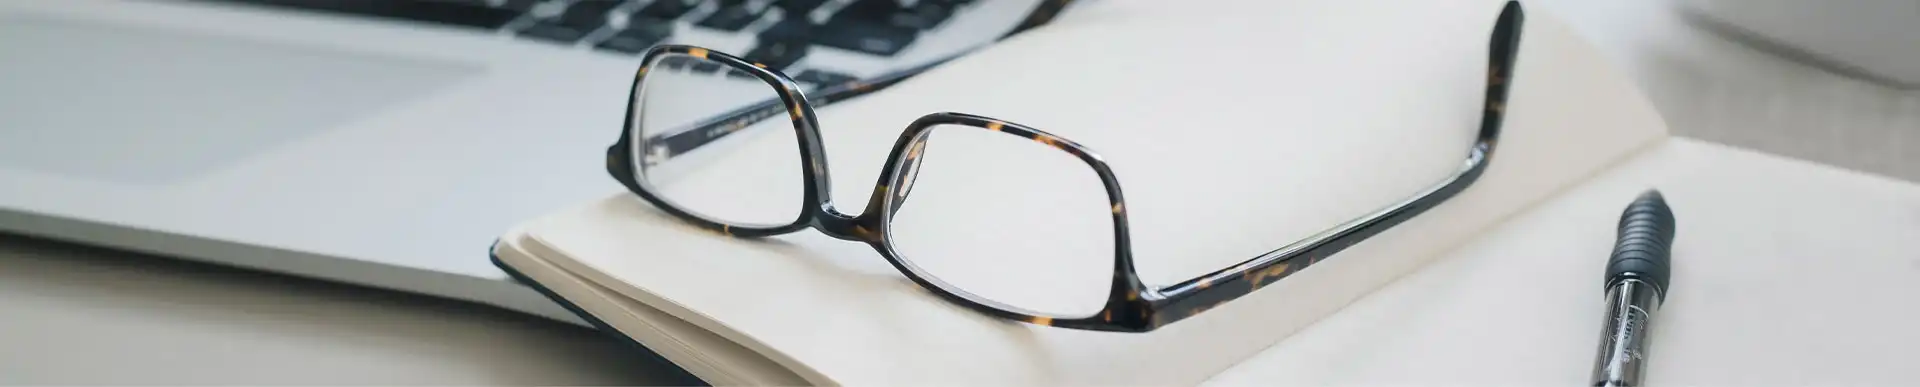 photo de lunettes sur un bureau